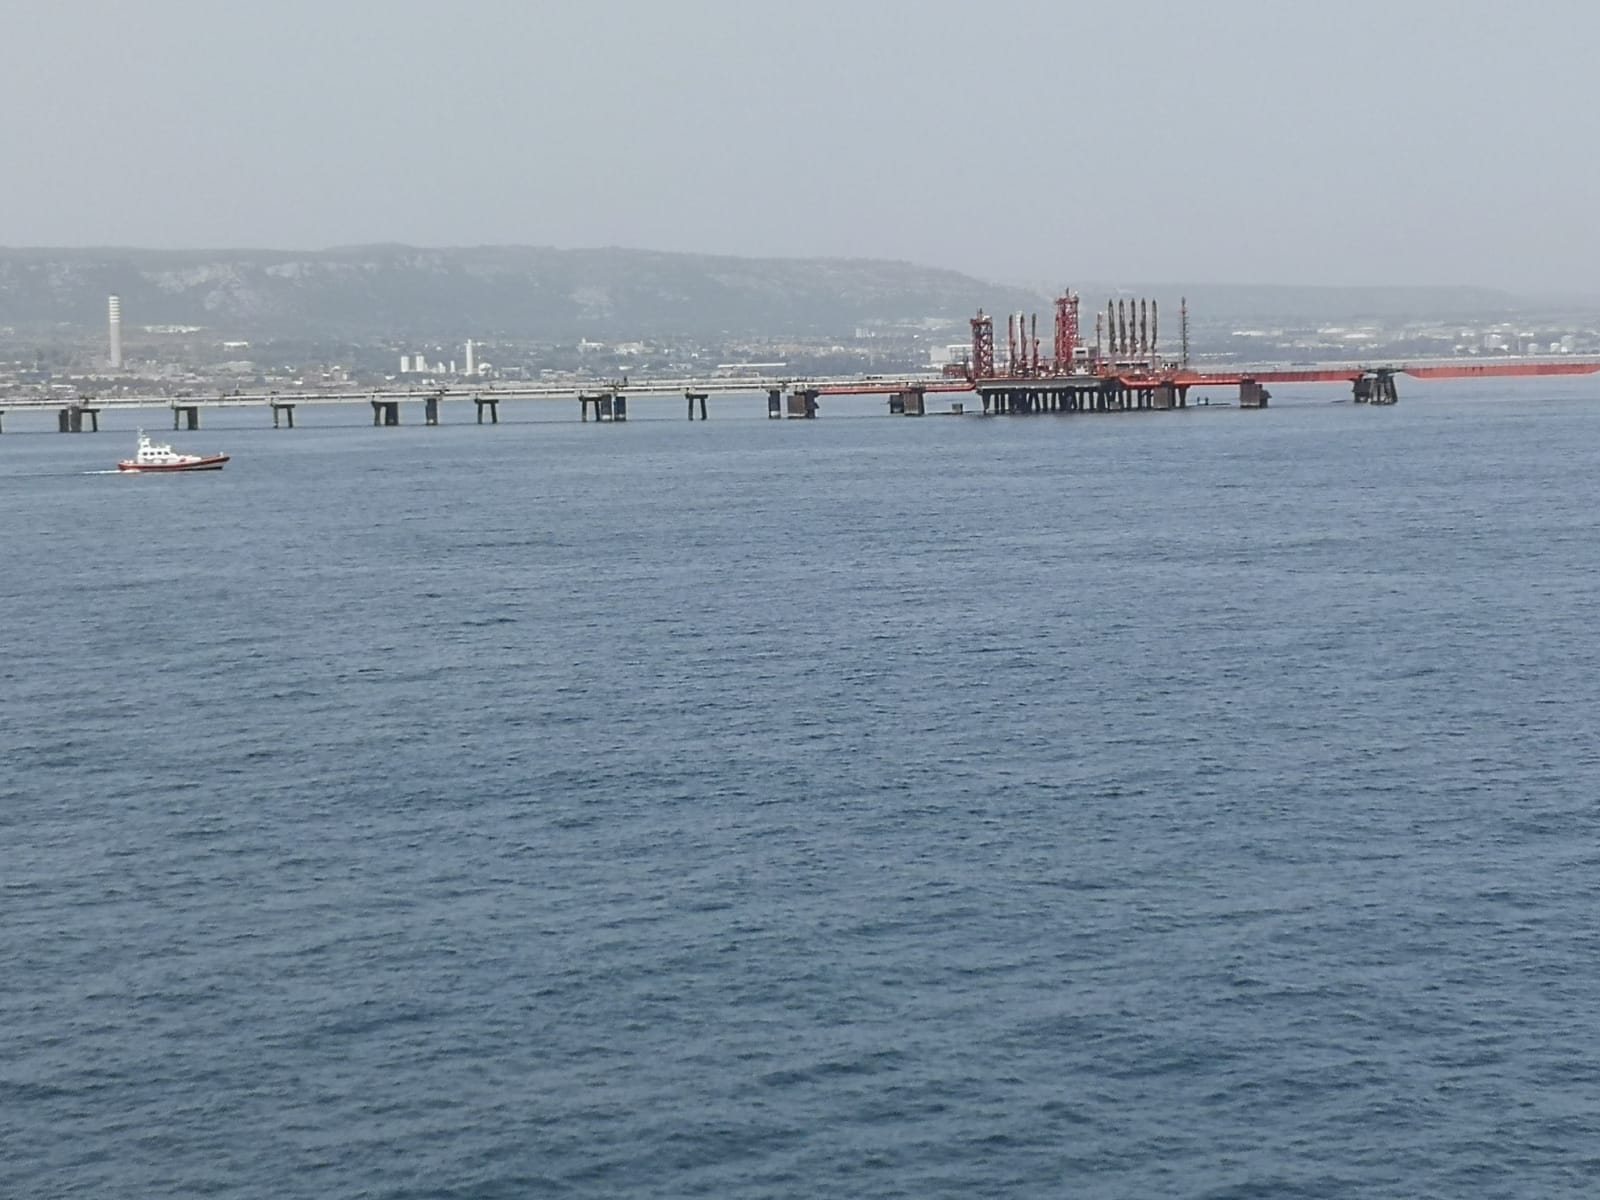 Lunga scia scura deturpa la baia di Santa Panagia: scatta la prevenzione dell’inquinamento marino